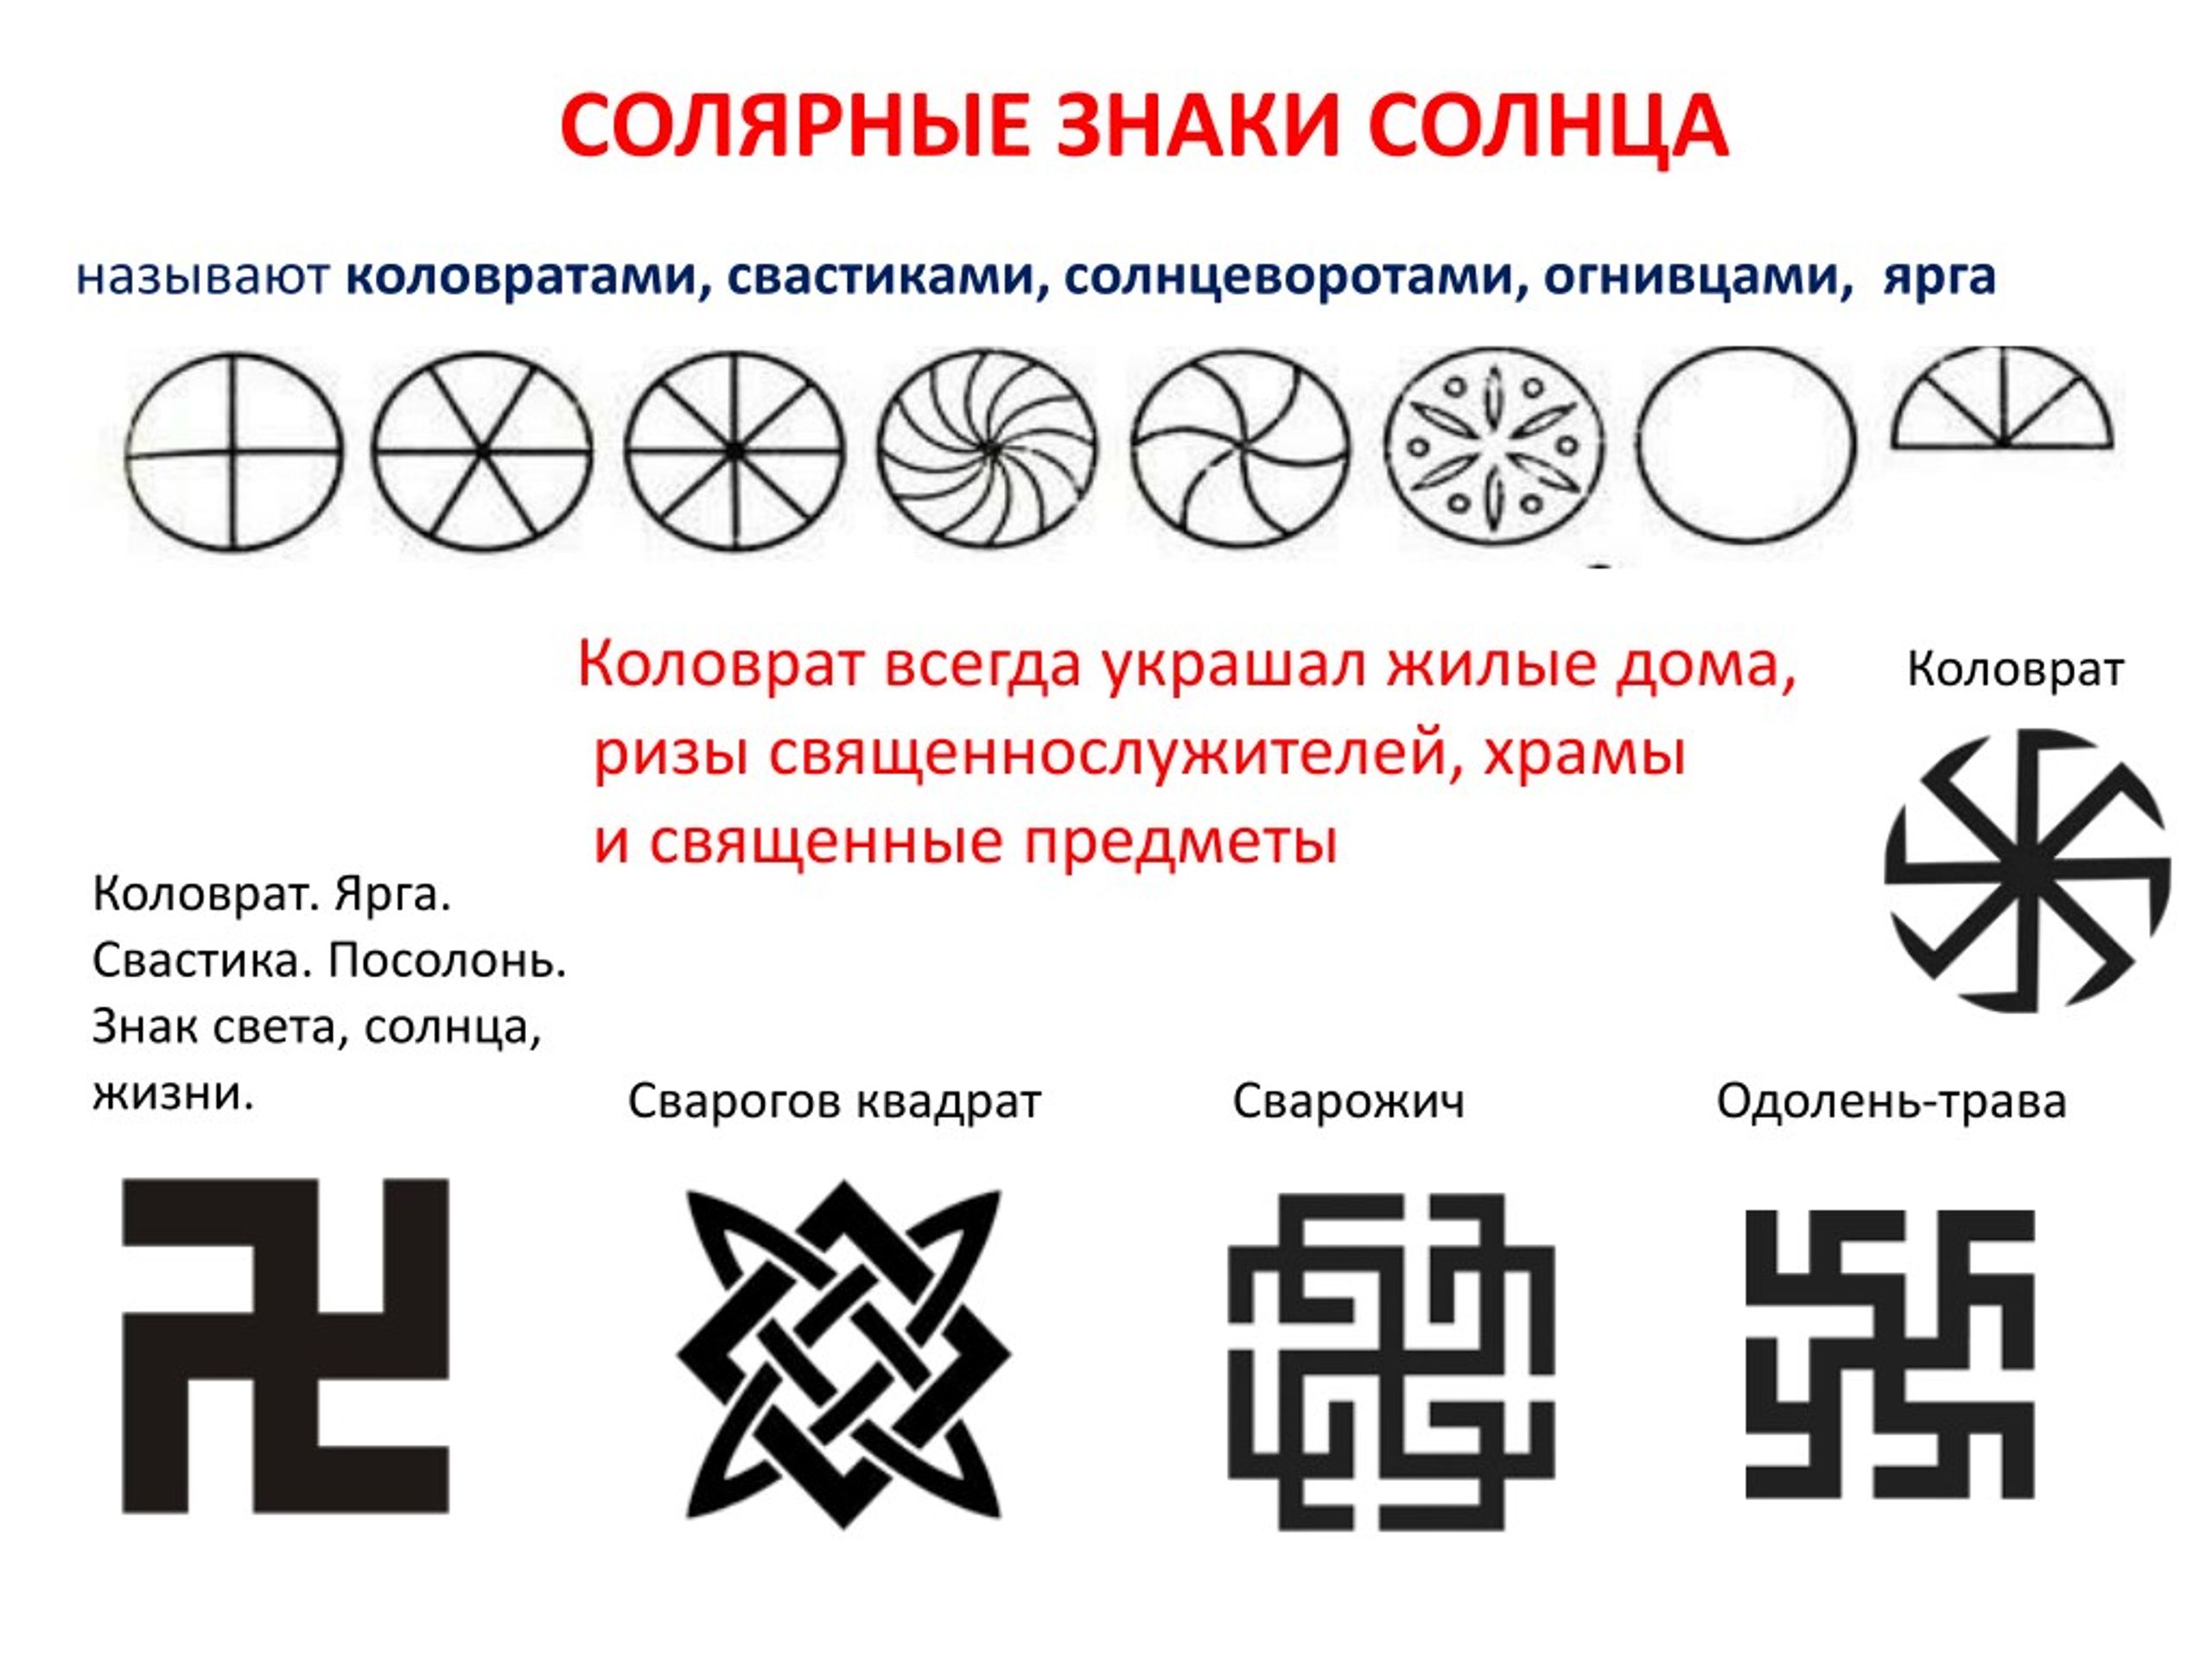 Какие символы можно увидеть. Солярные знаки солнца у славян. Солярные символы древней Руси.